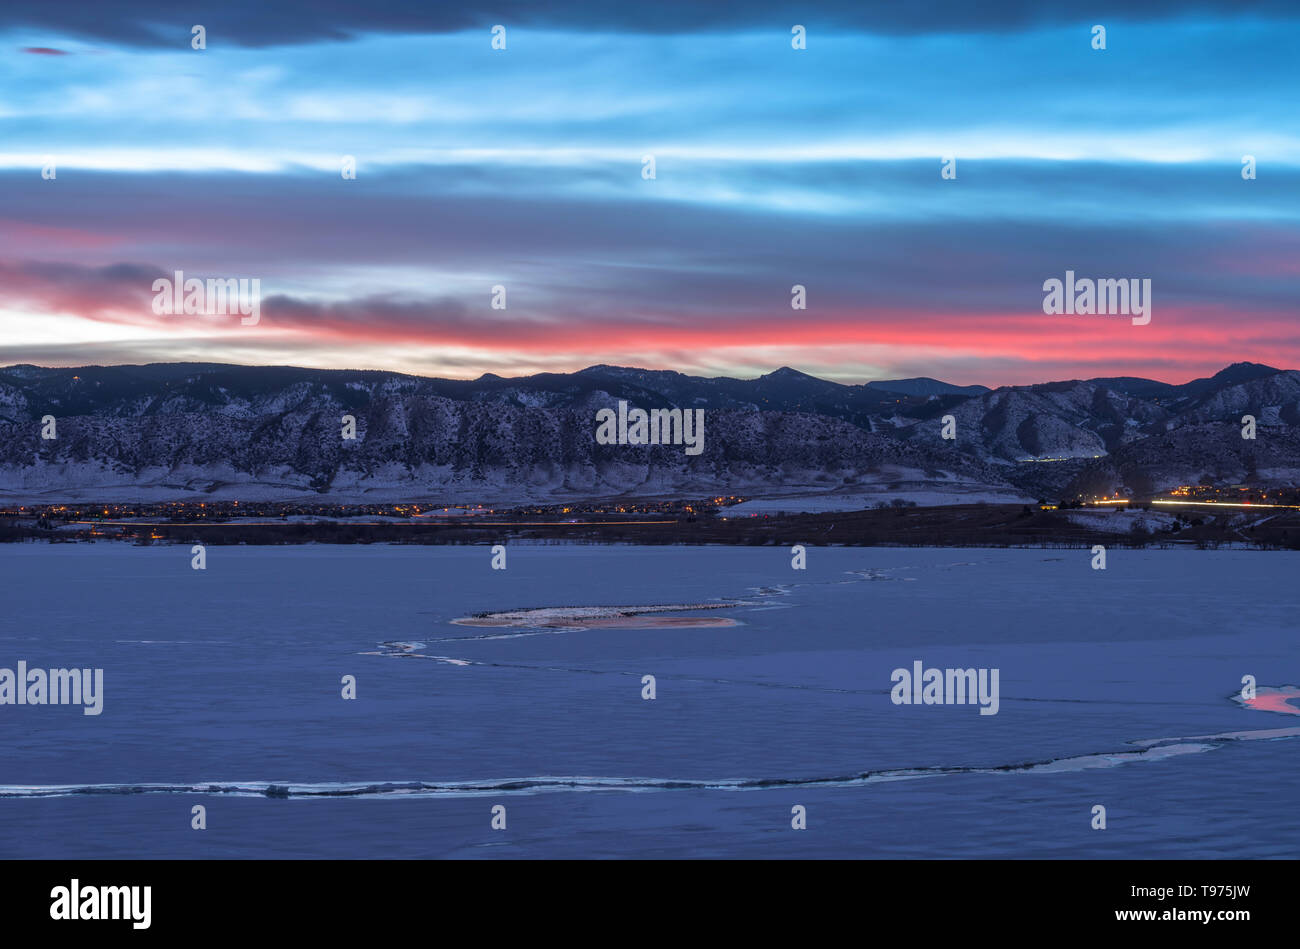 Winter Sonnenuntergang am Denver Front Range - Sonnenuntergang Blick auf den zugefrorenen See und Schnee - Berge im Südwesten von Denver, Colorado, USA. Stockfoto